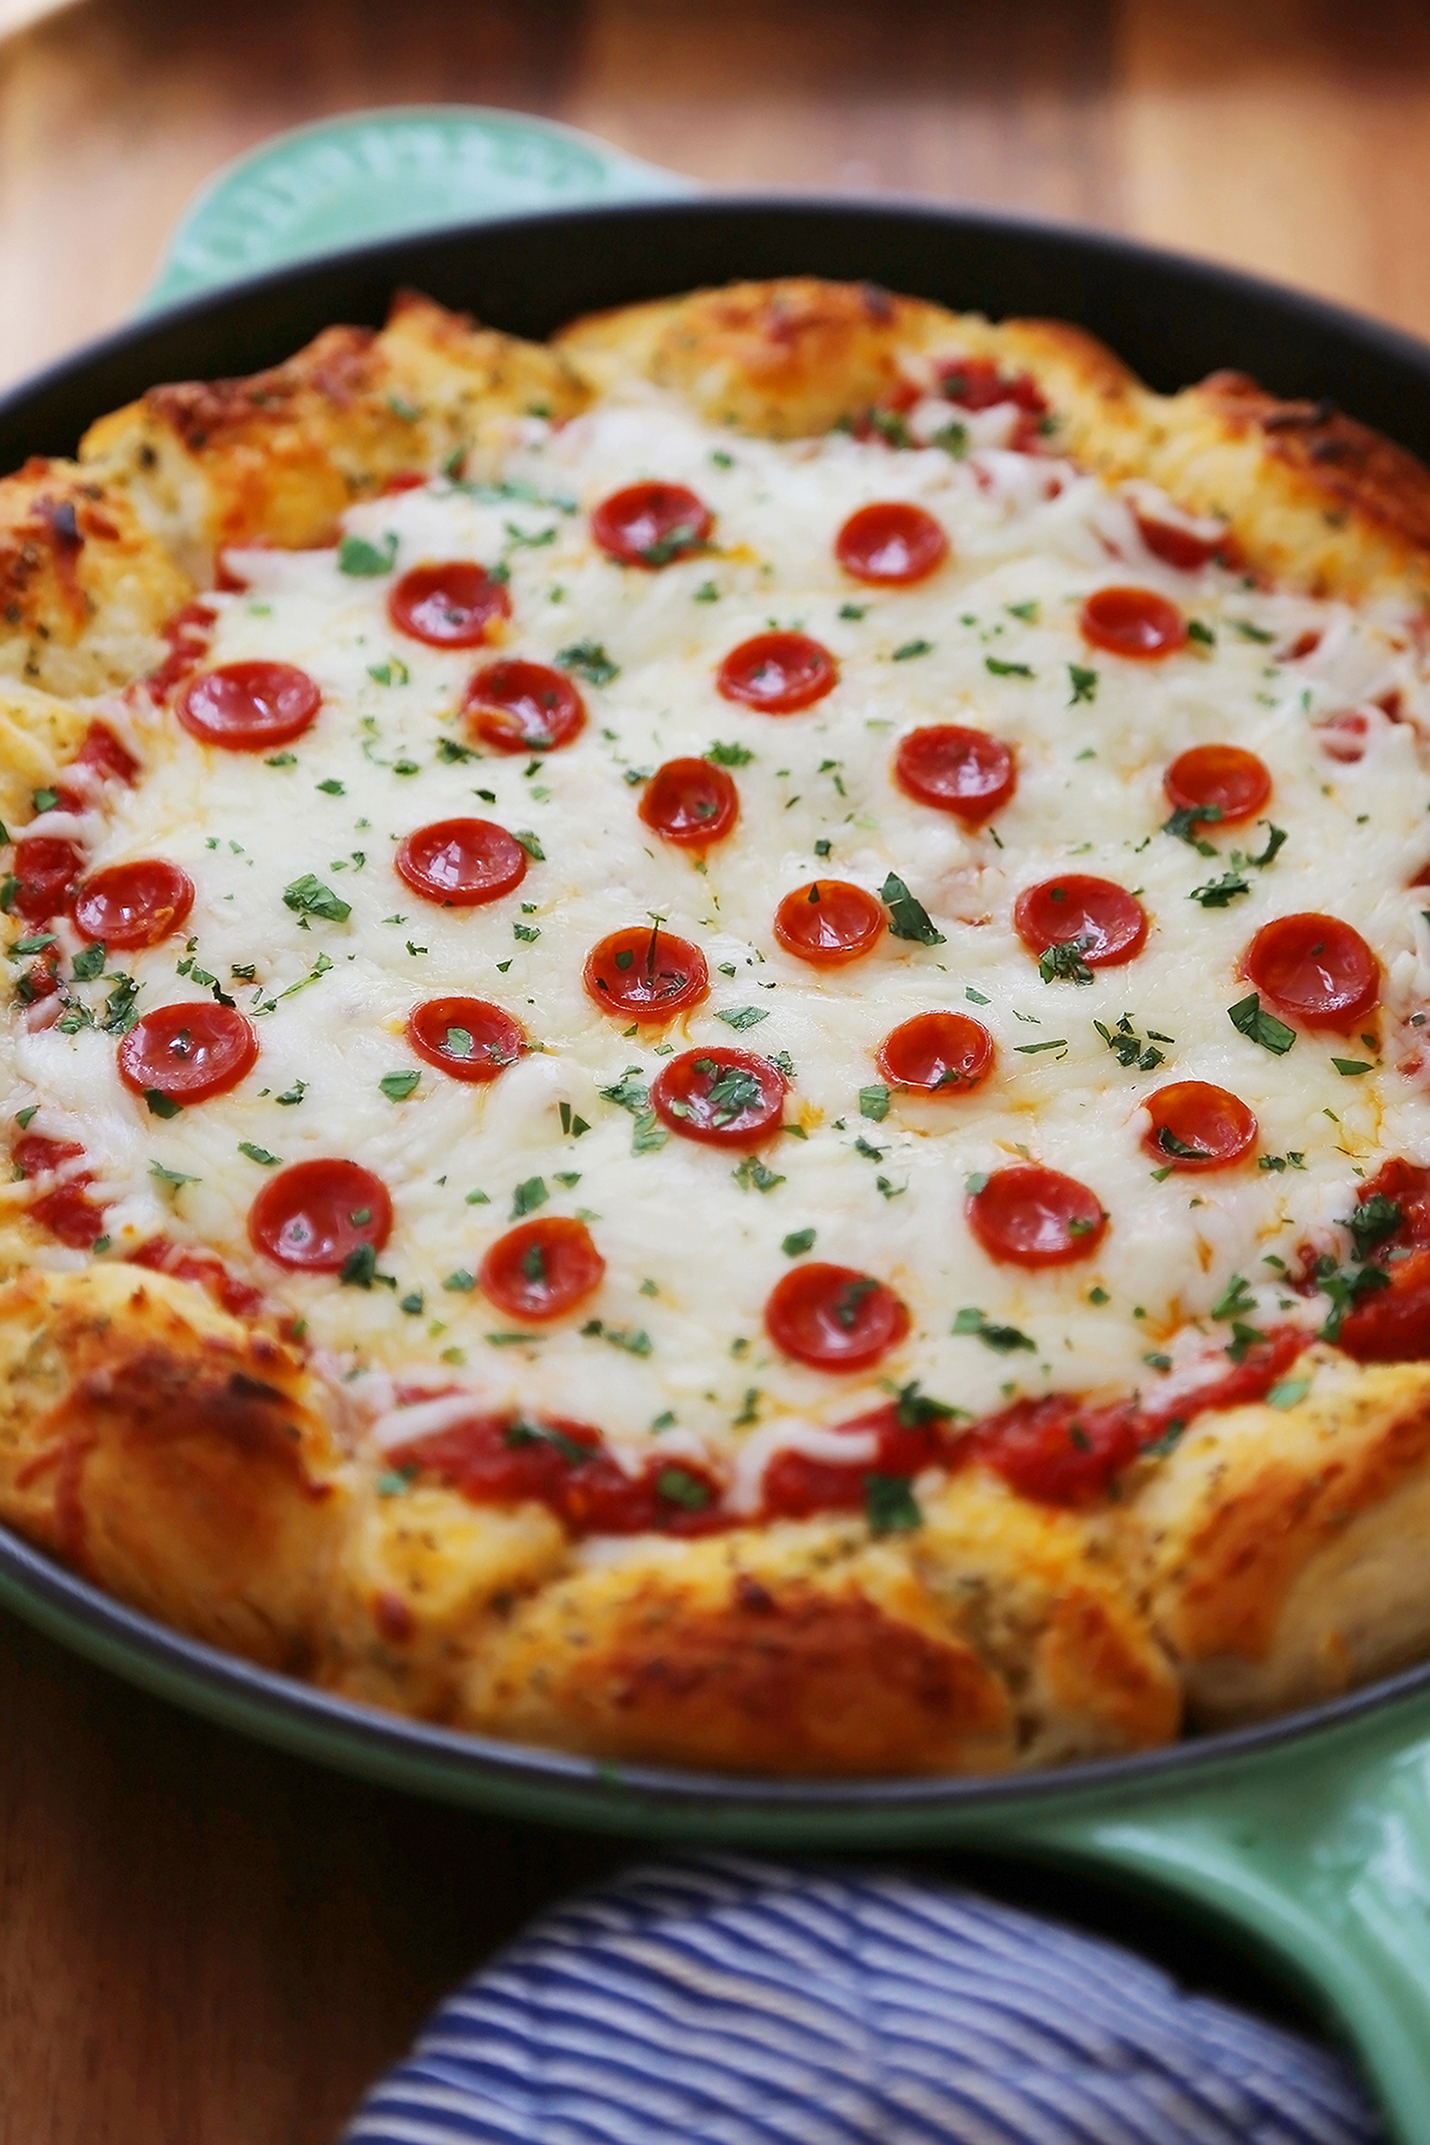 самые вкусные пиццы рецепты в домашних условиях фото 106